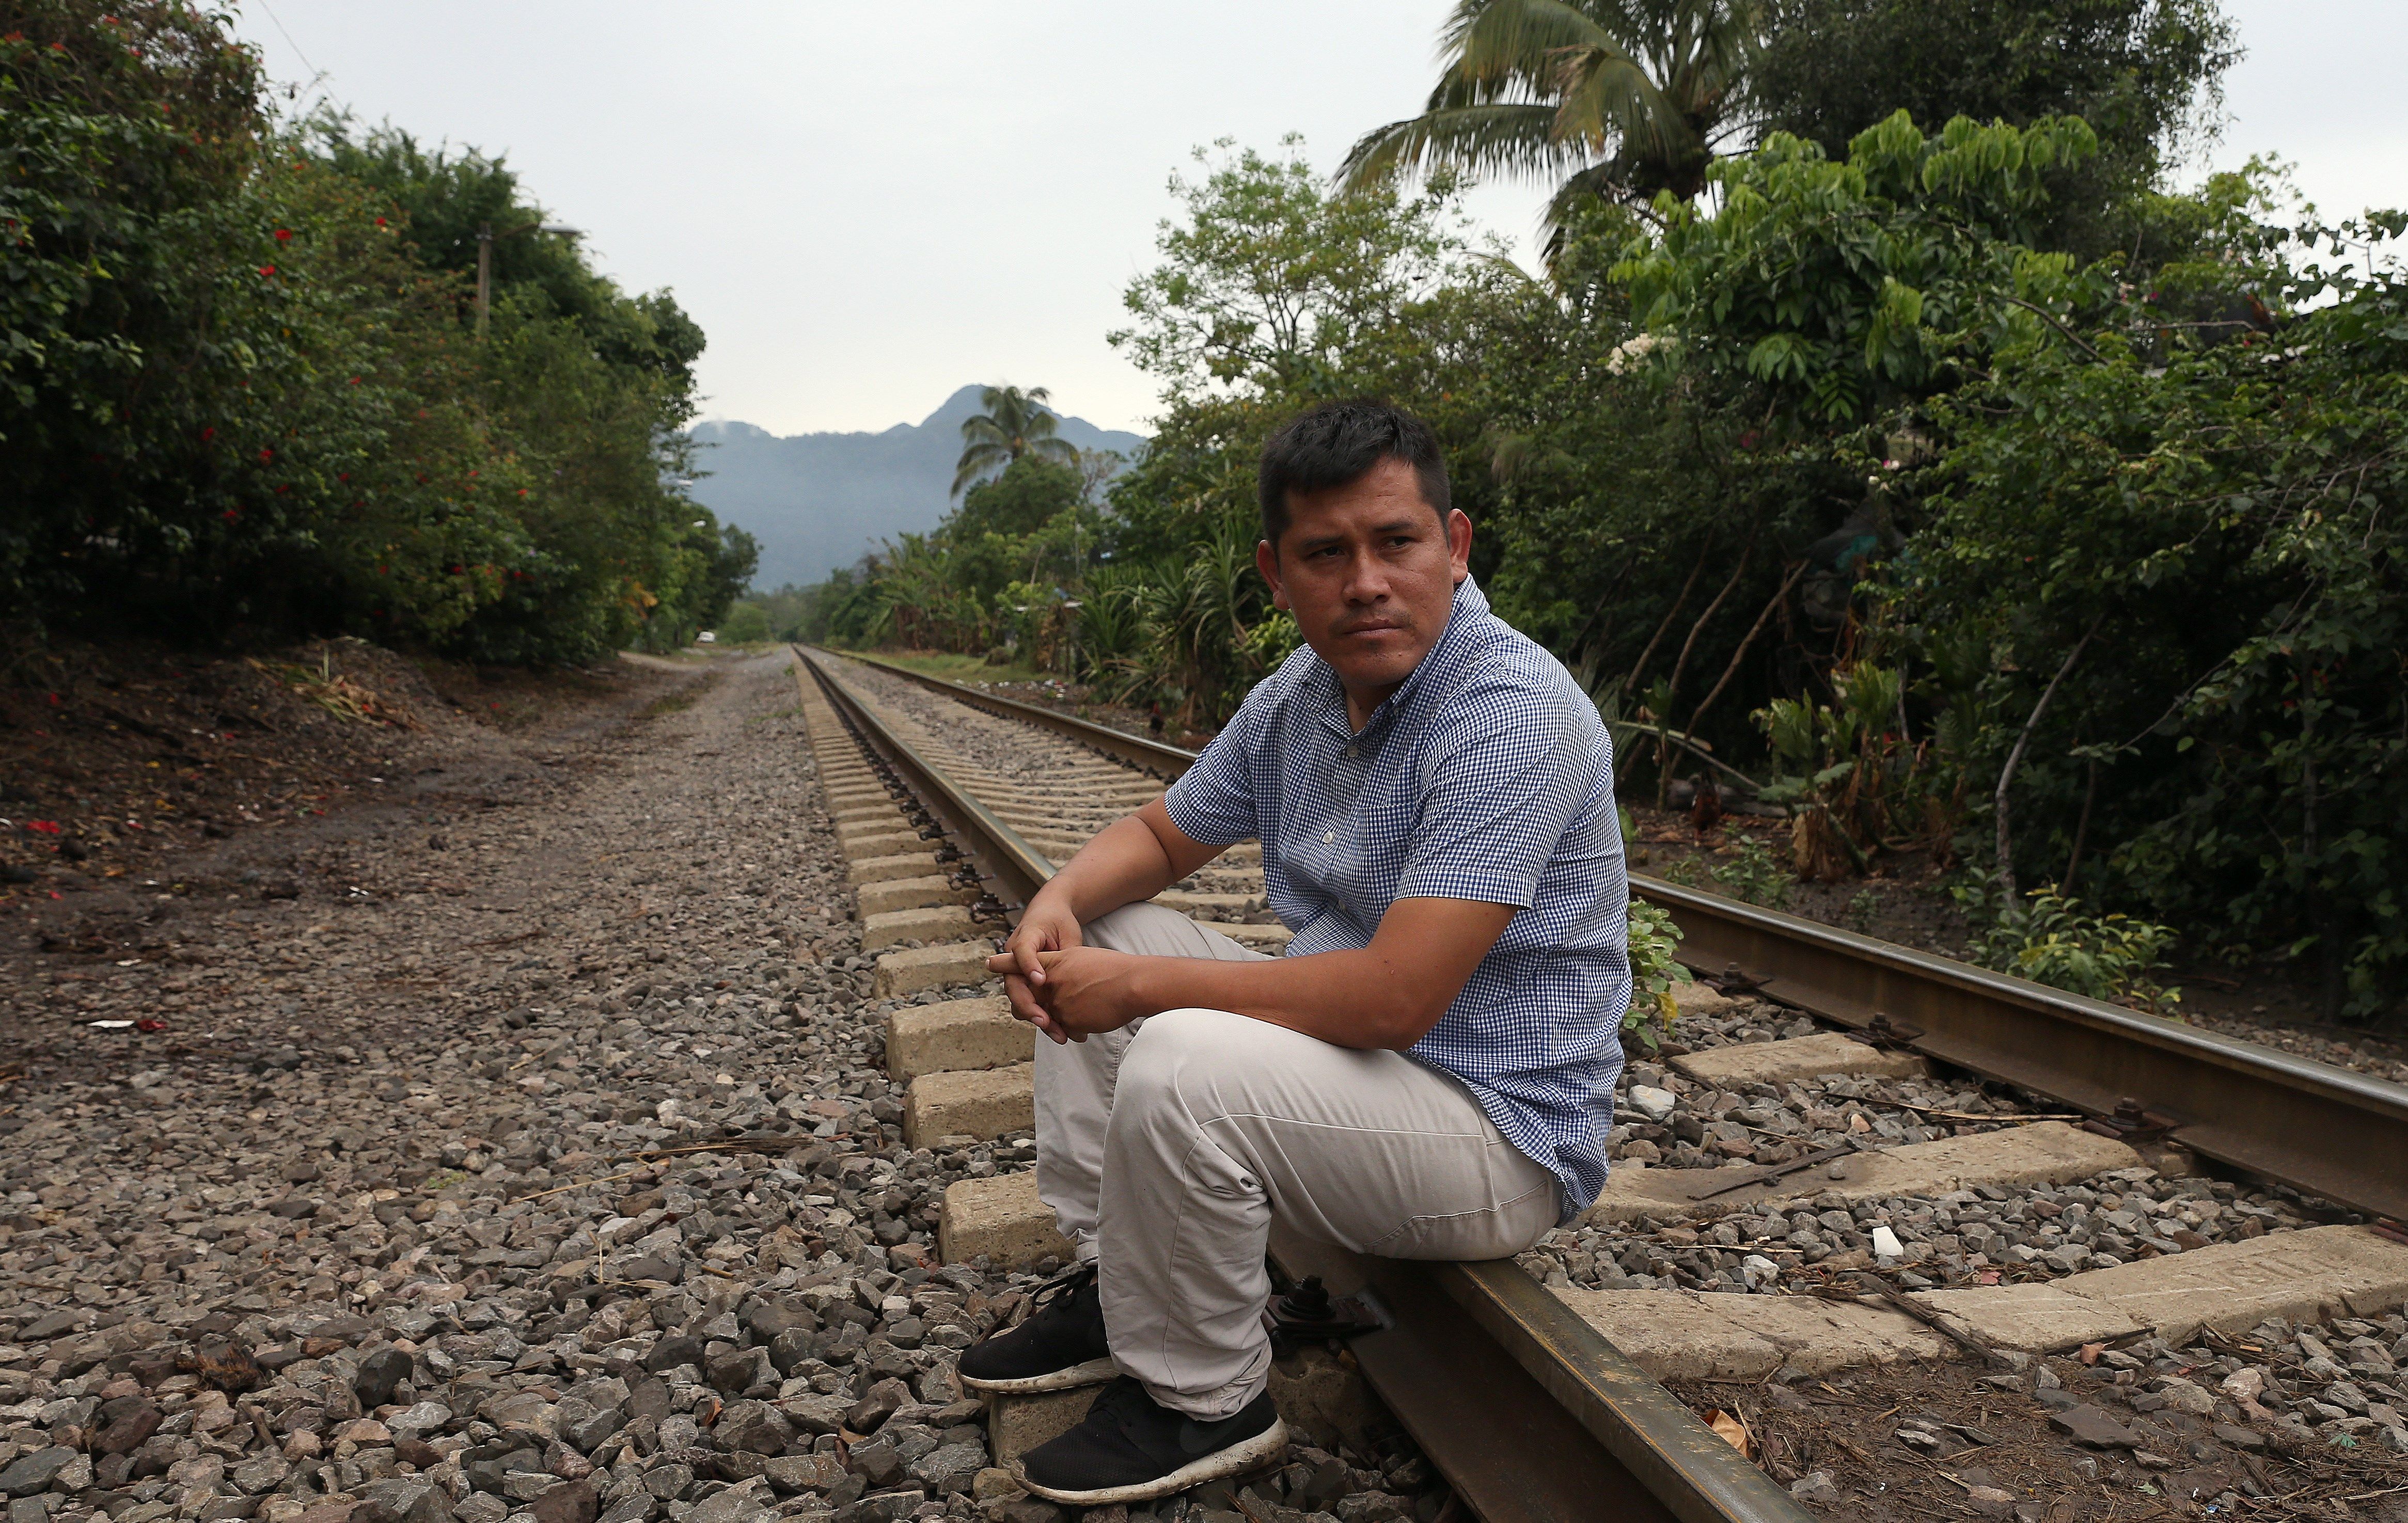  Impulsan campaña para que migrantes centroamericanos se regularicen en México